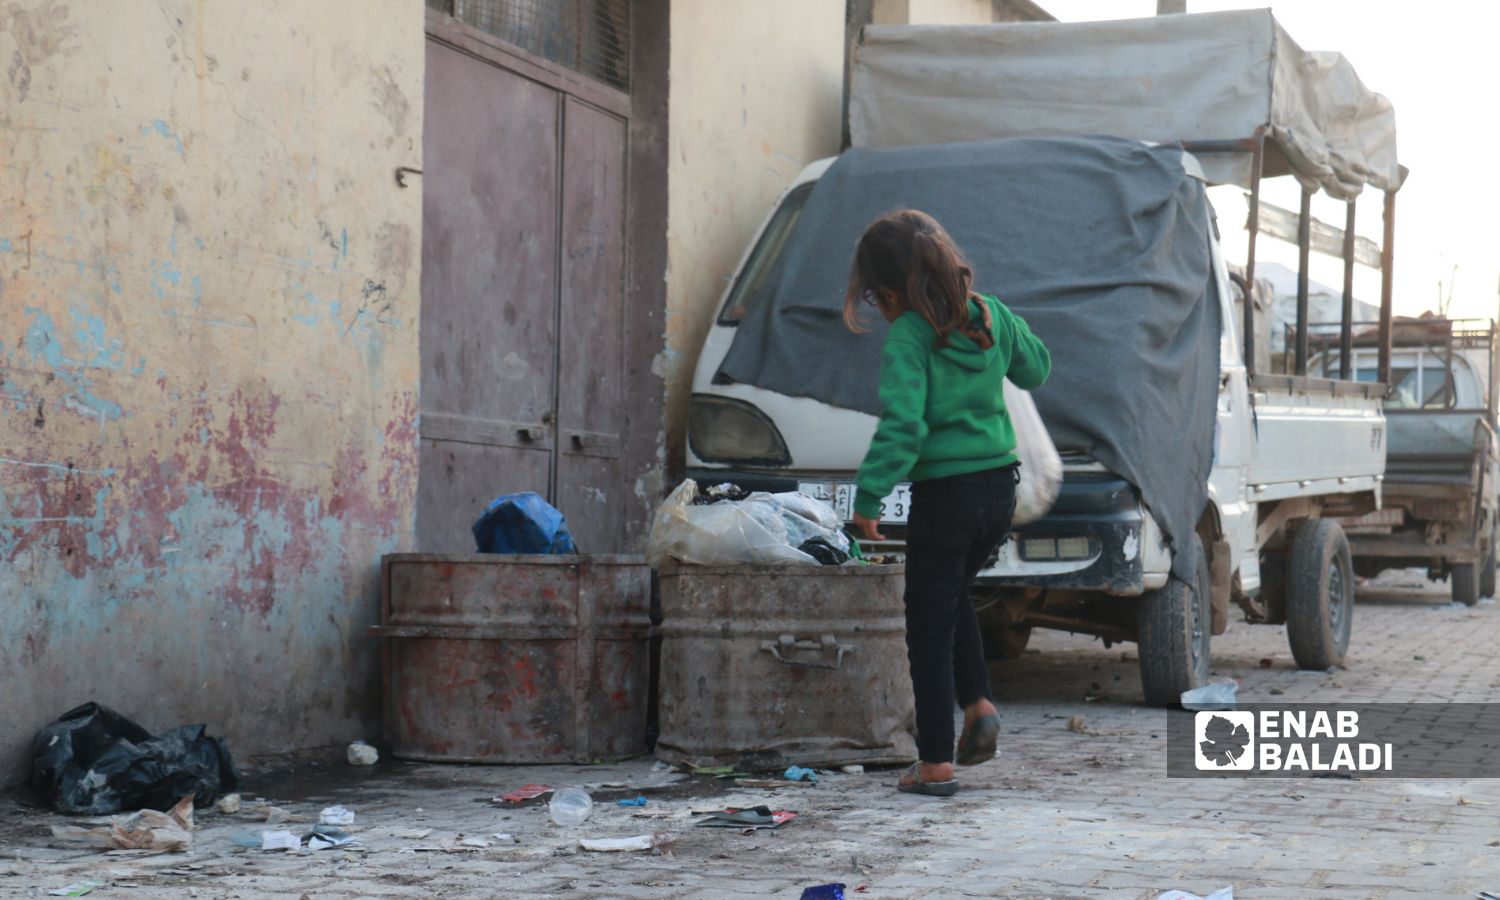 طفلة ترمي قمامة في مخيم "باب السلامة القديم" بريف حلب الشمالي- 4 من كانون الأول 2022 (عنب بلدي/ ديان جنباز)